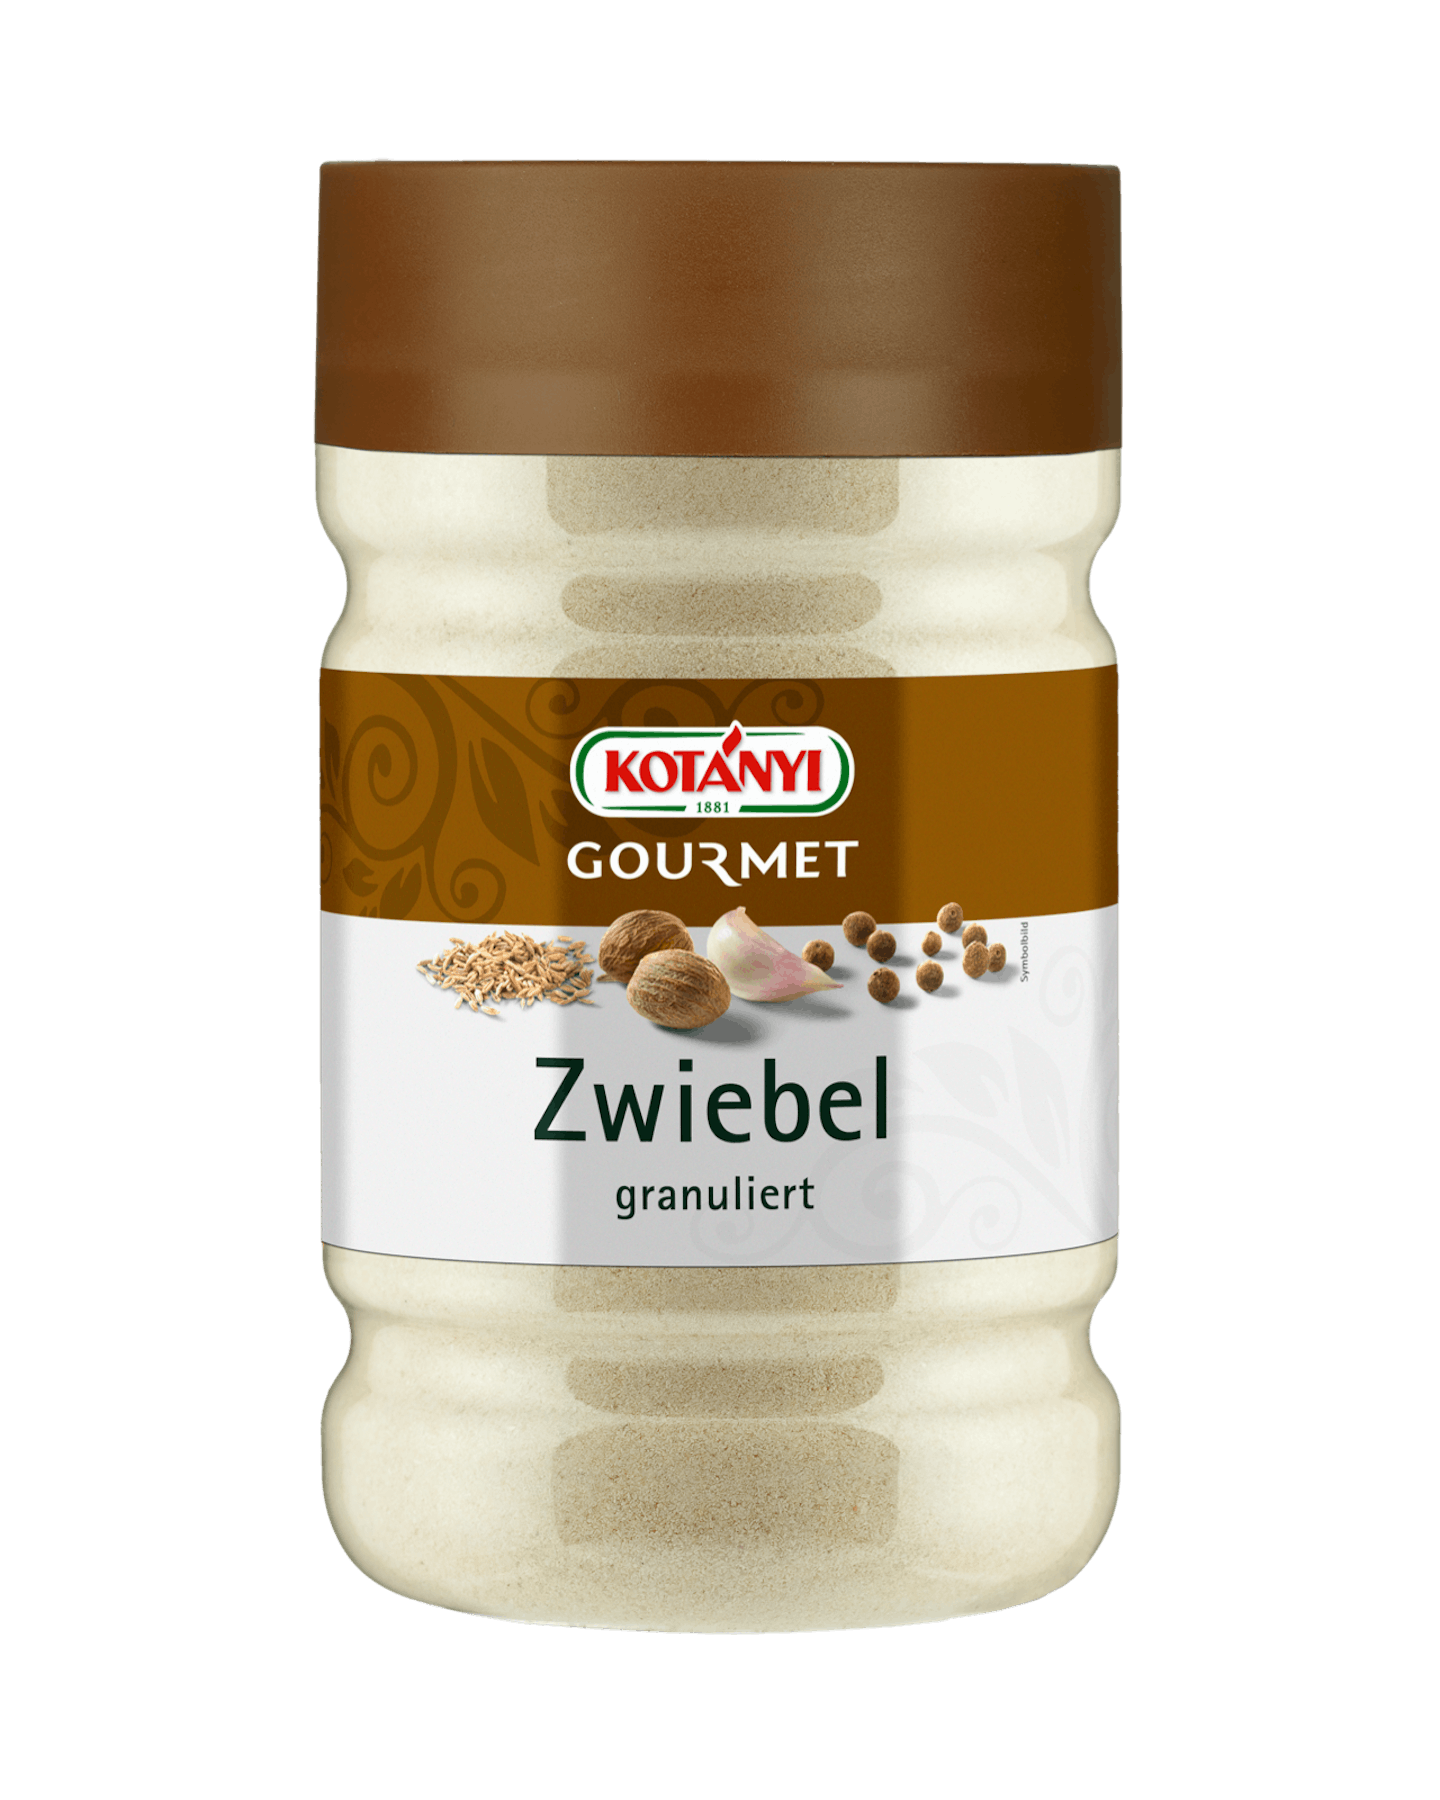 Kotányi Gourmet Zwiebel granuliert in der 1200ccm Dose